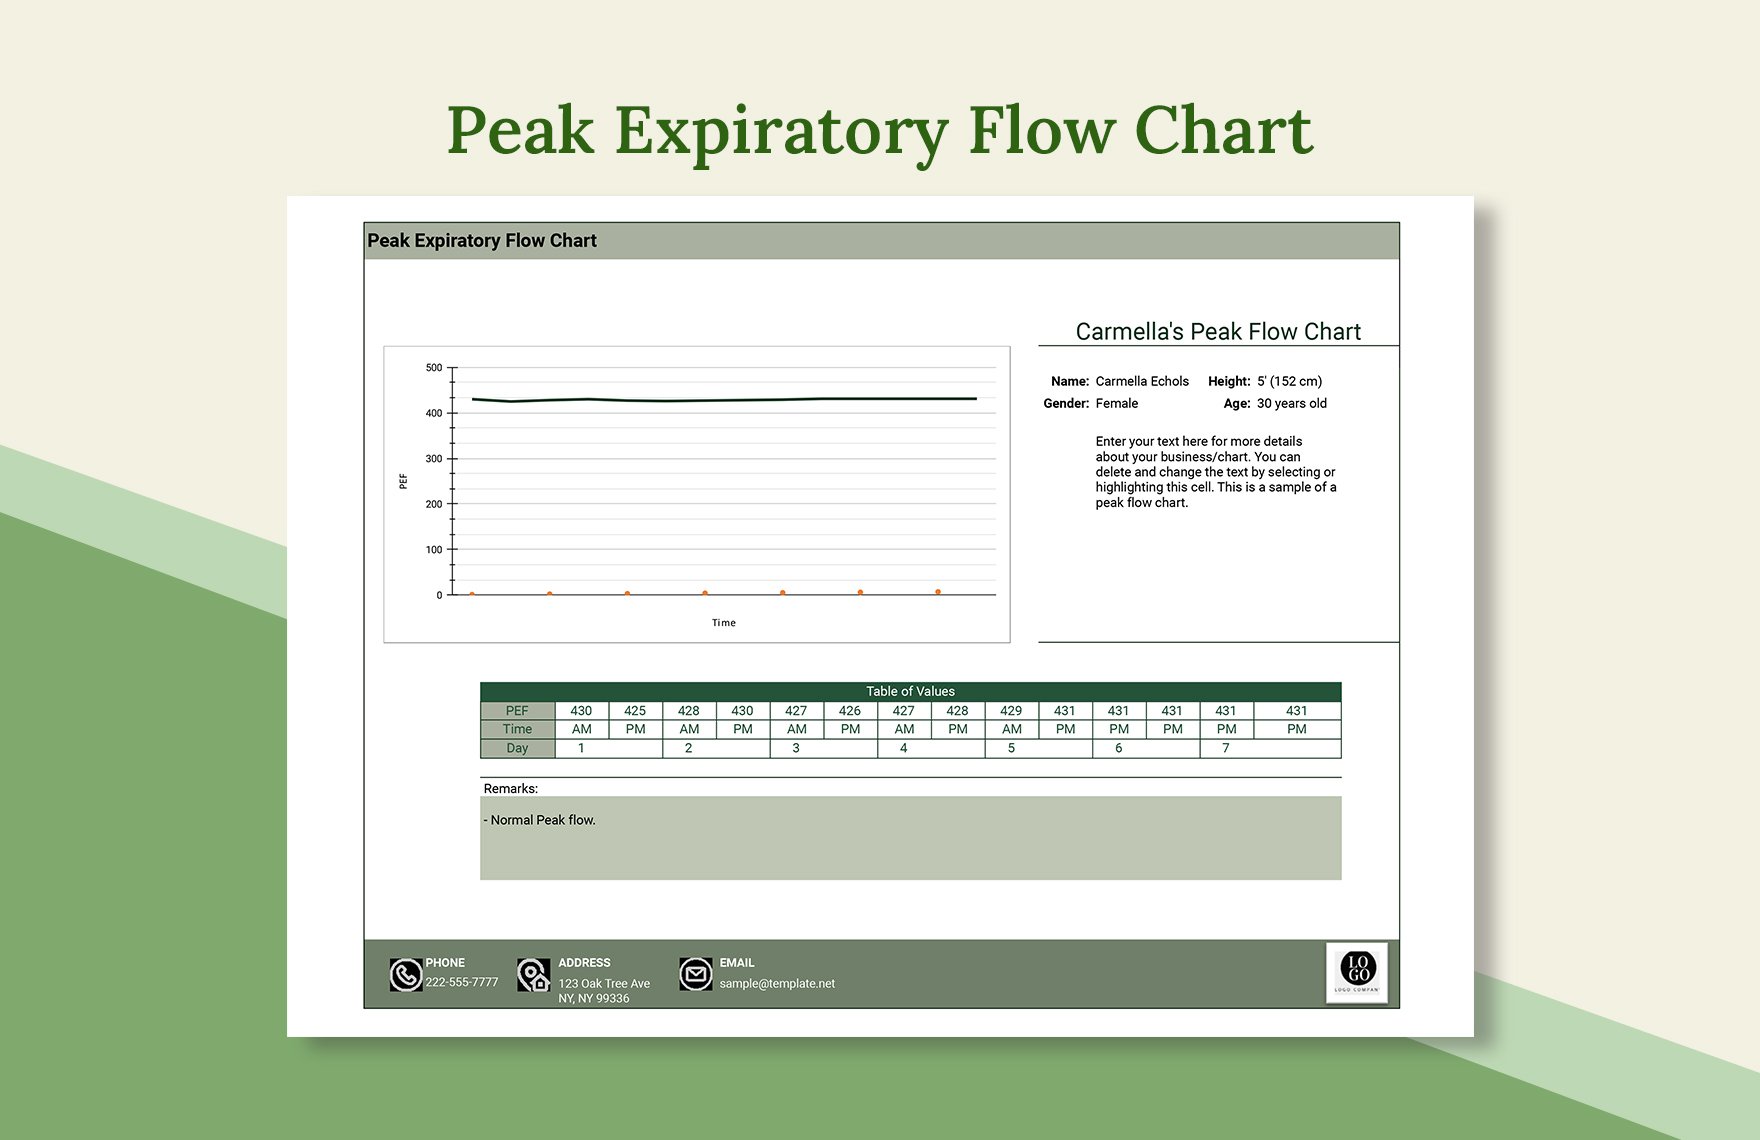 Peak Expiratory Flow Chart